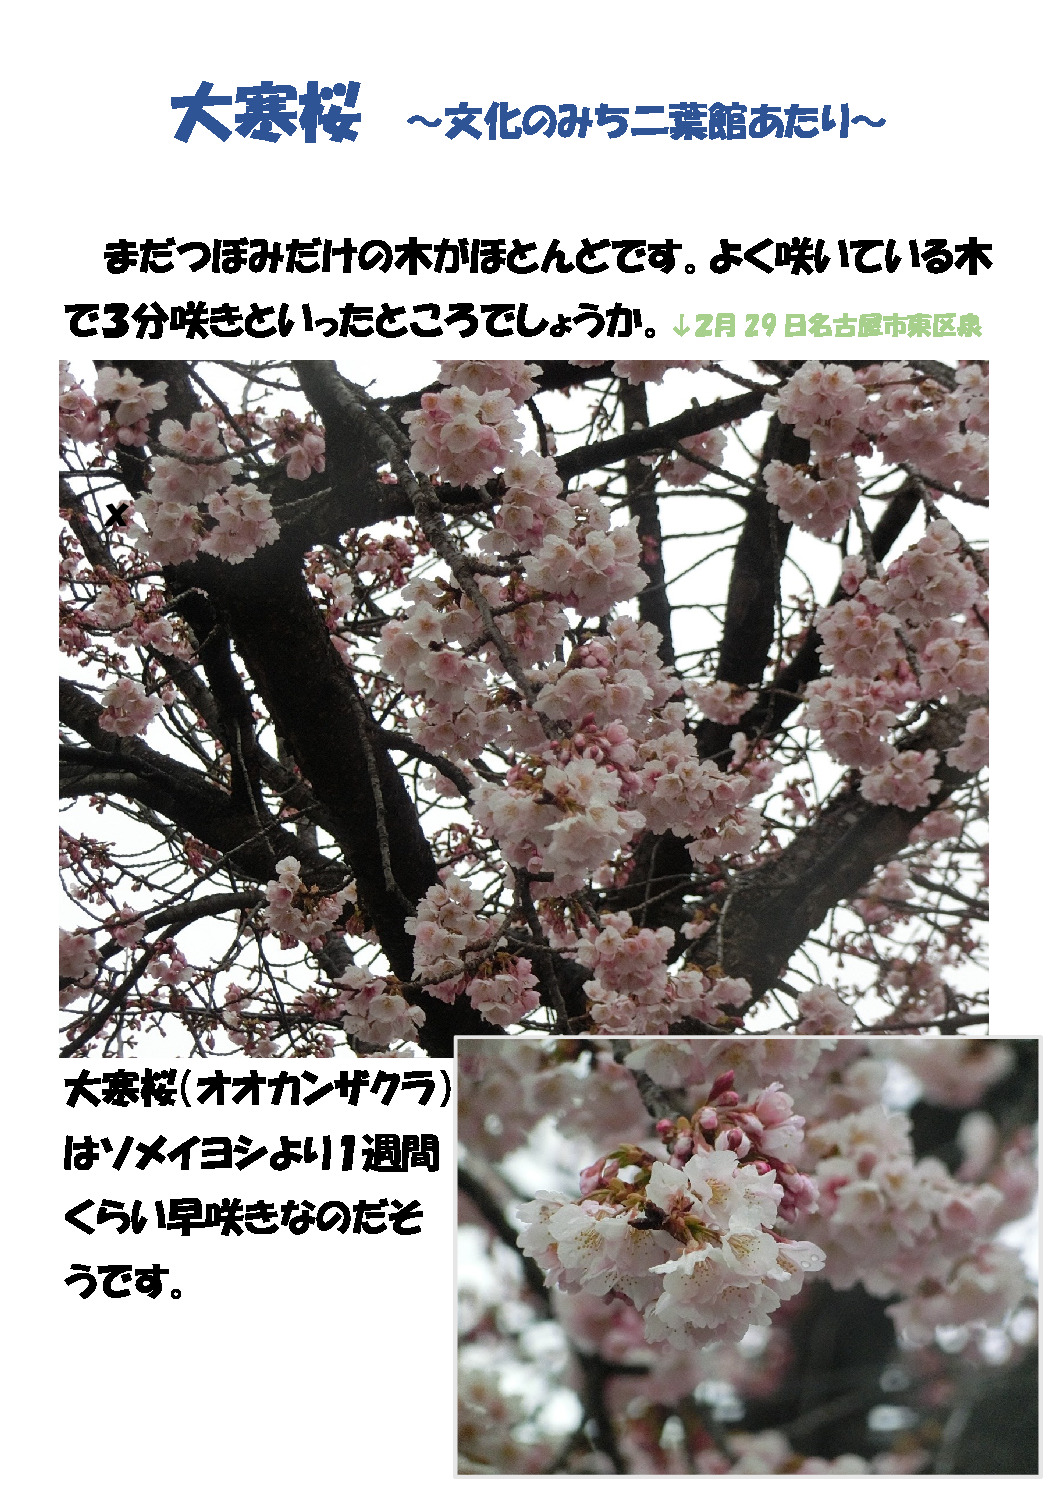 緋寒桜のサムネイル